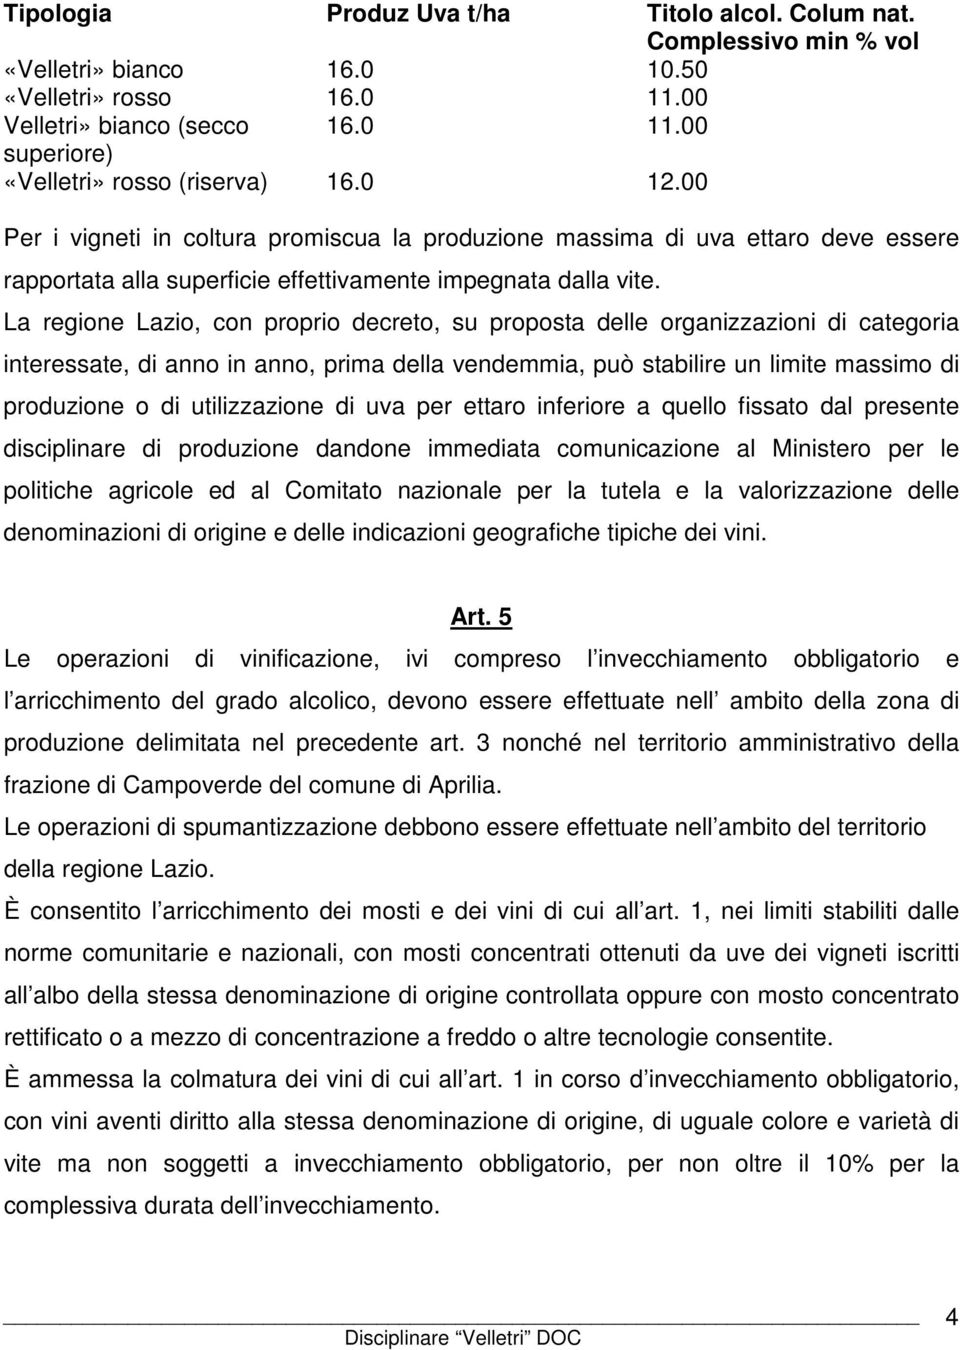 La regione Lazio, con proprio decreto, su proposta delle organizzazioni di categoria interessate, di anno in anno, prima della vendemmia, può stabilire un limite massimo di produzione o di